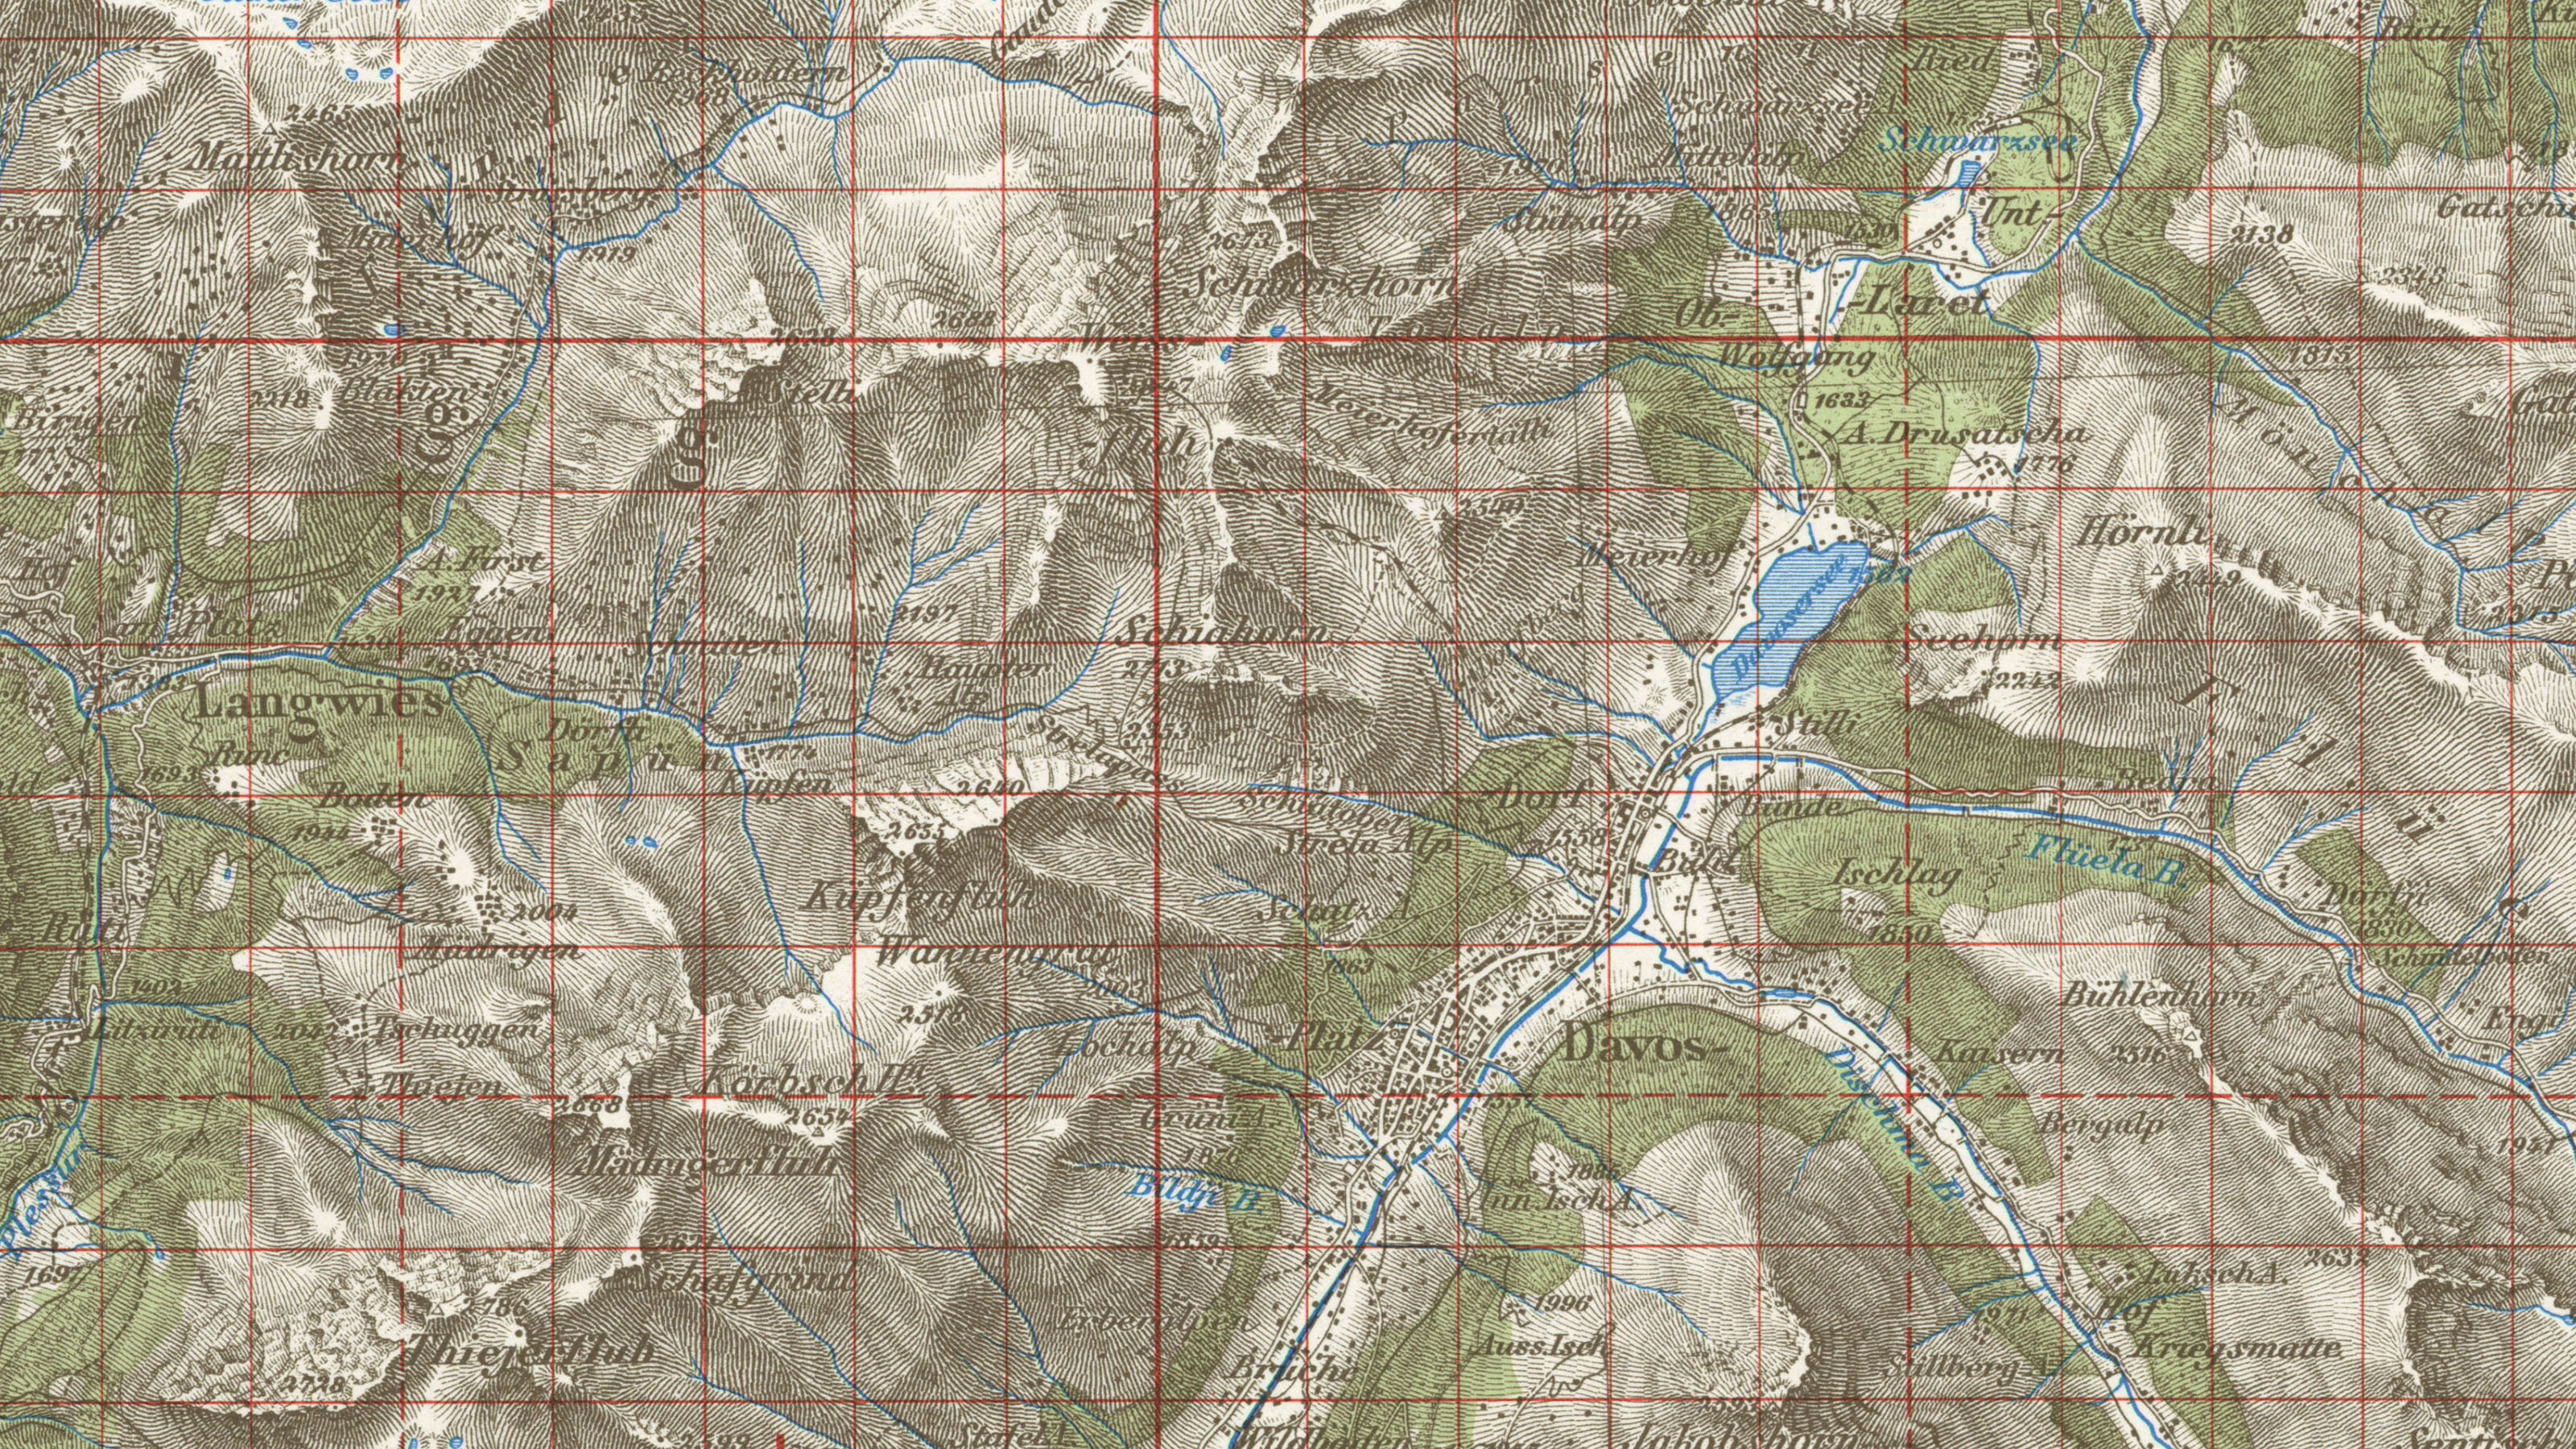 L'extrait de la carte Dufour montre Davos et ses environs, recouverts d'une quadrillage kilométrique rouge.